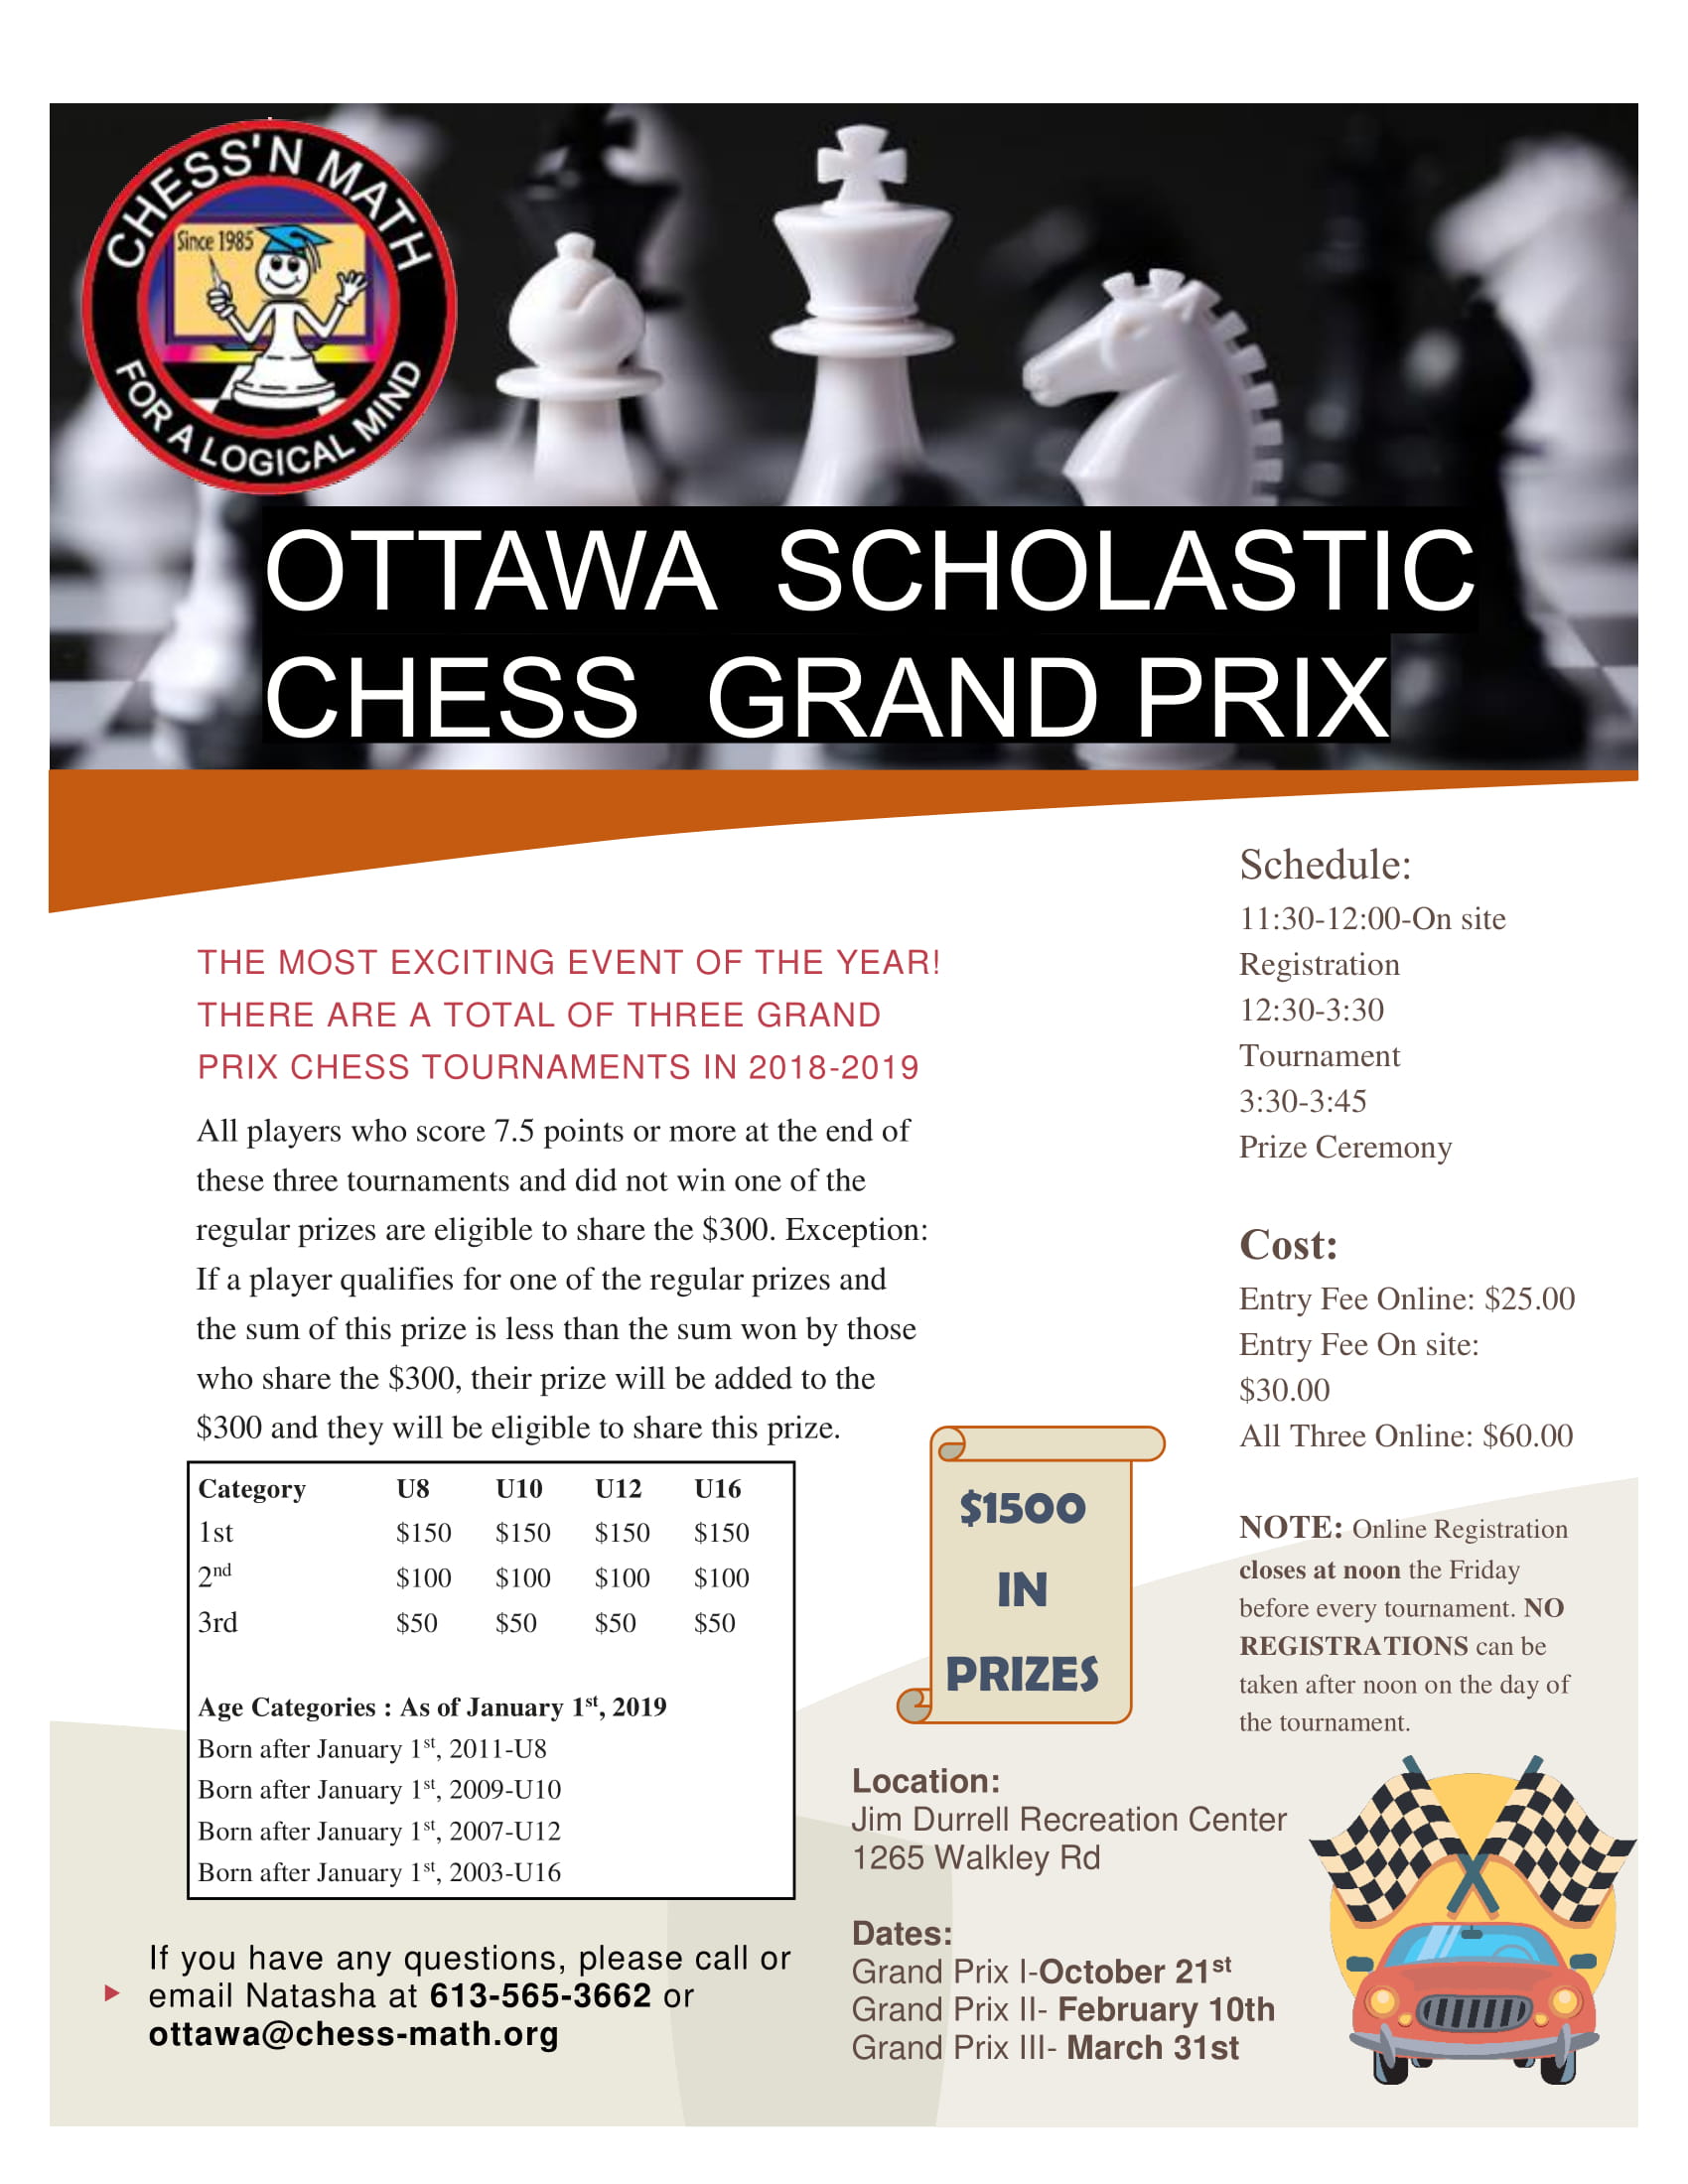 Grand Prix Ottawa 2018-2019